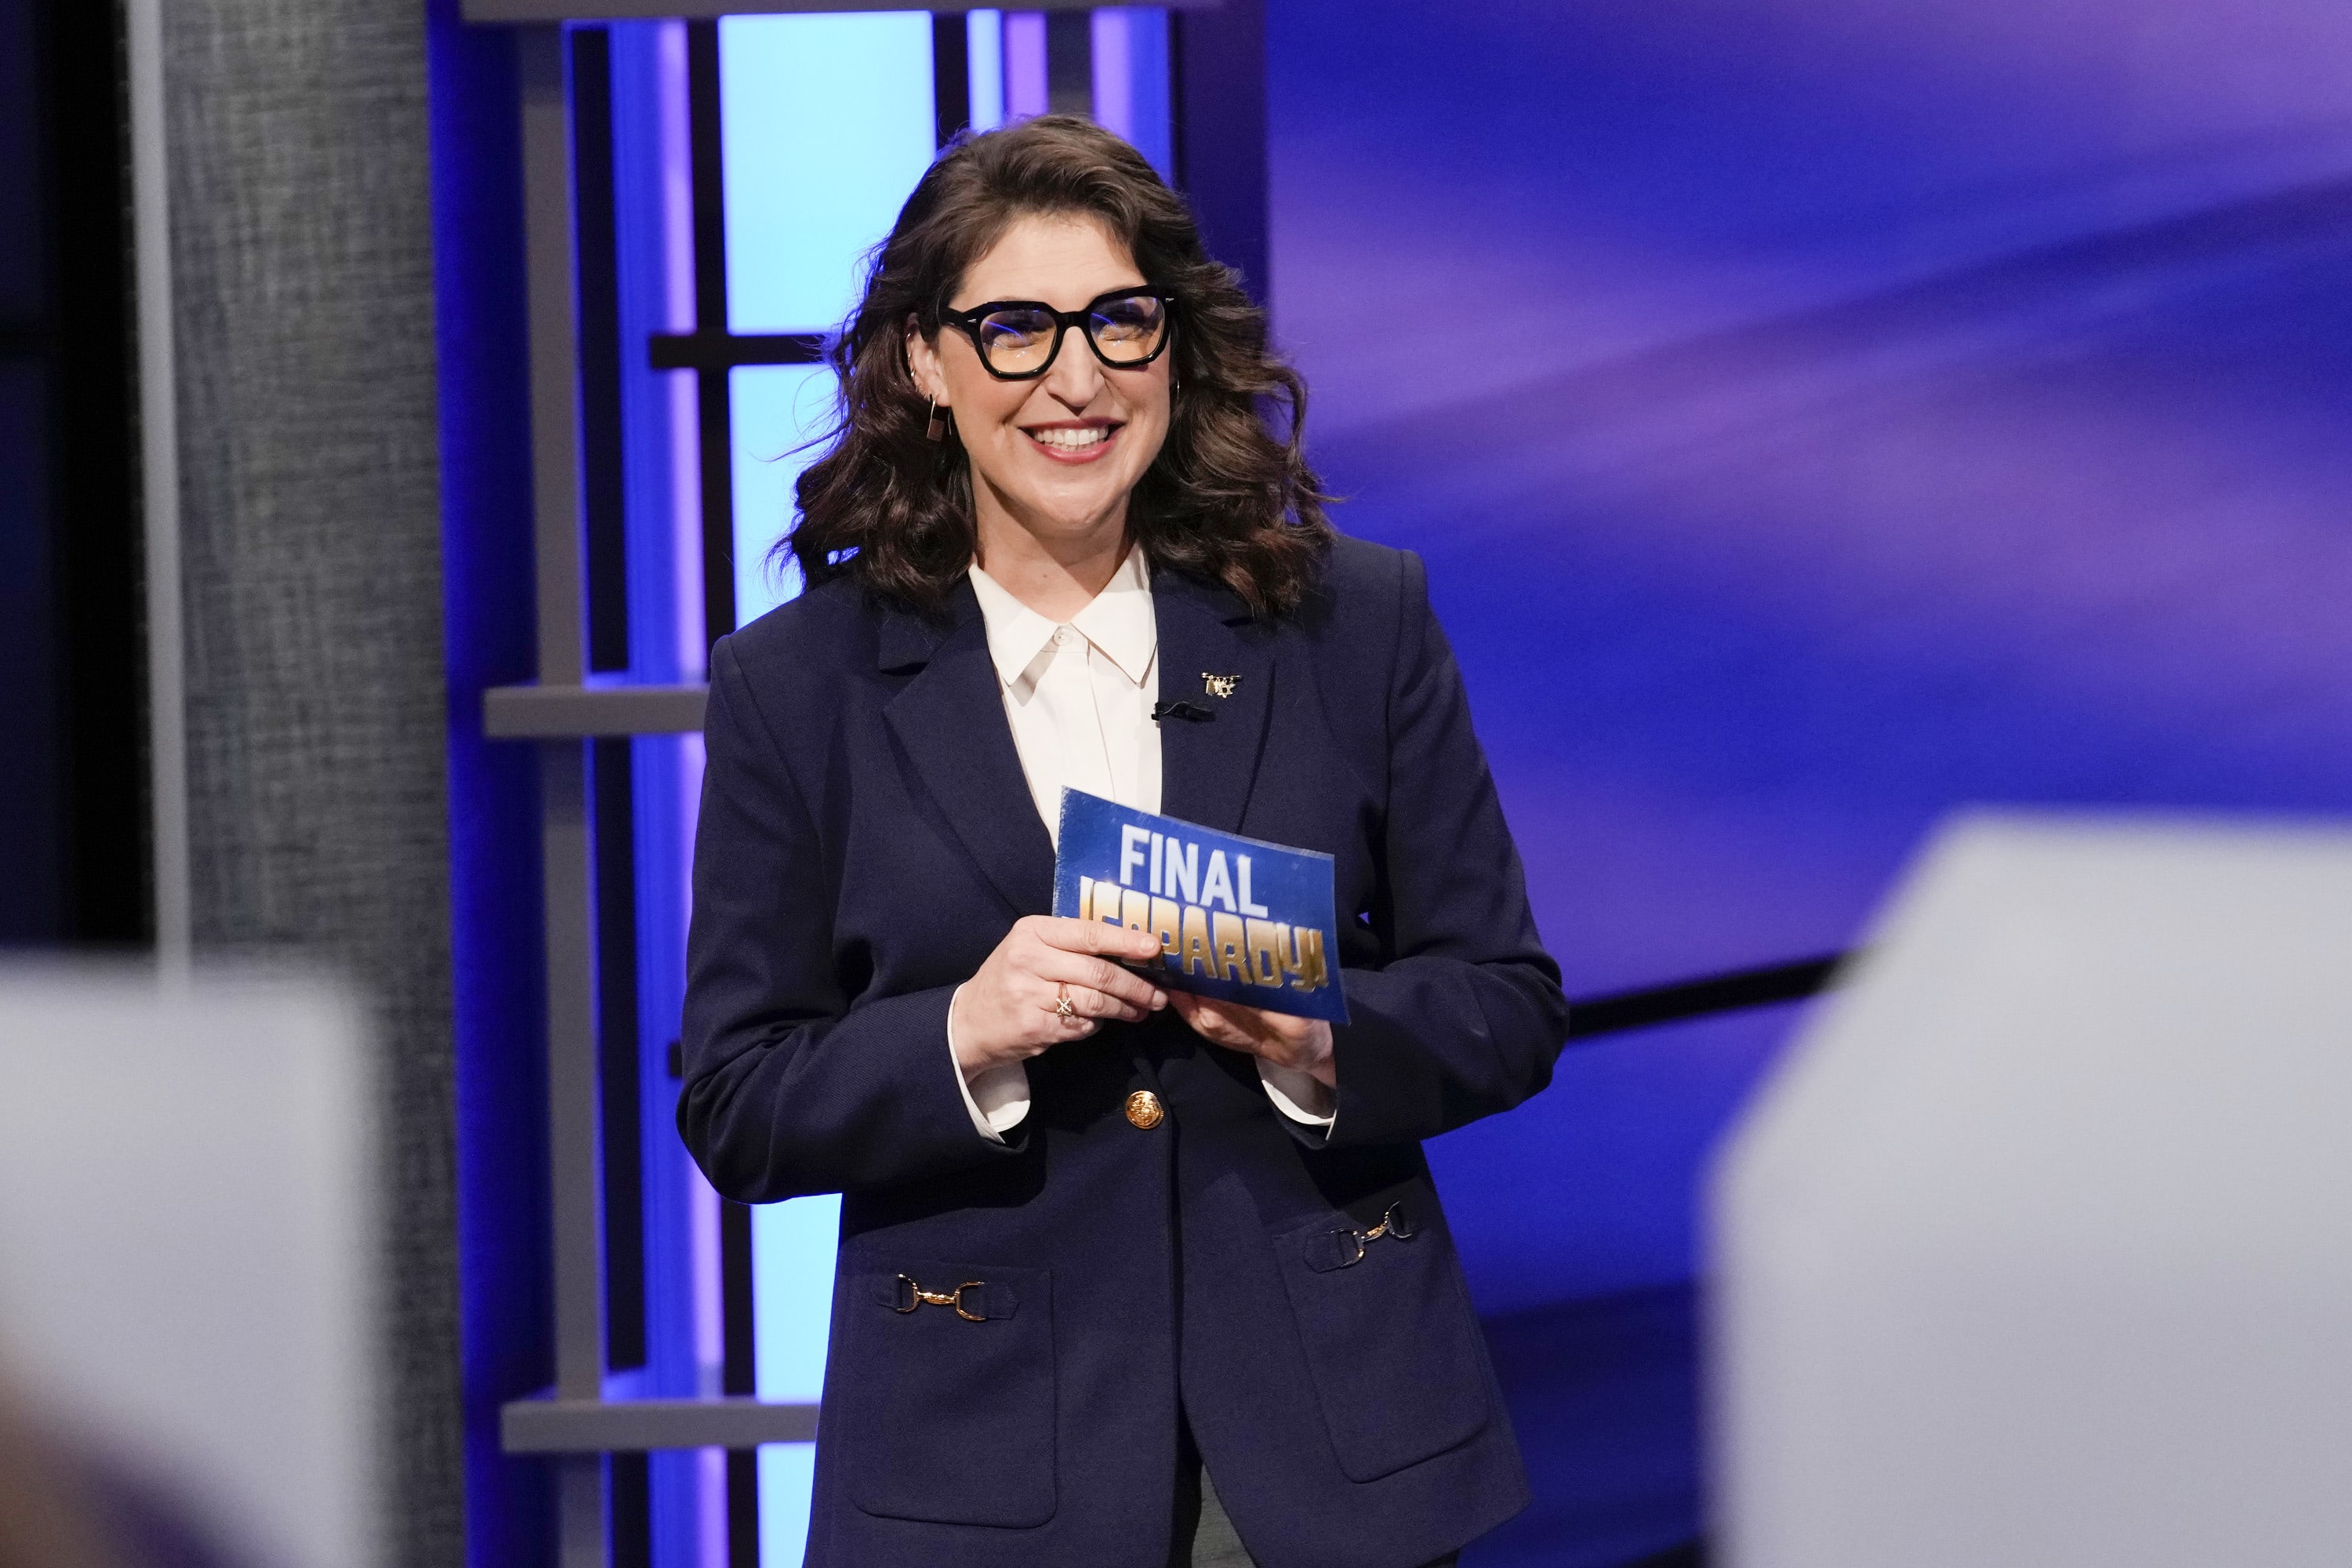 Who won Jeopardy! tonight, January 10, 2023?